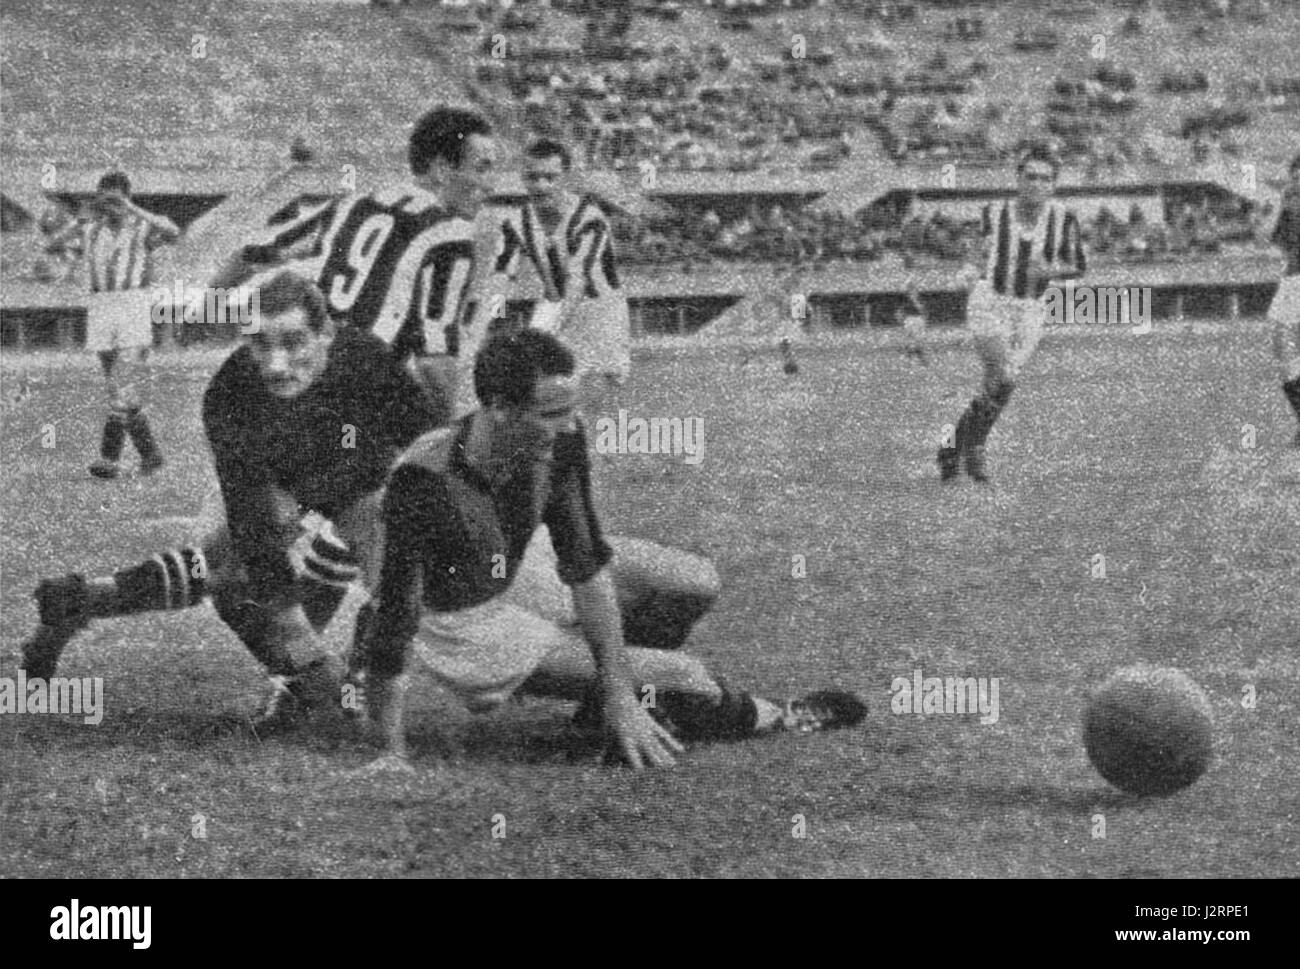 Turin (Italien), Stadtstadion Benito Mussolini, 28. Juni 1942. Spielen Sie im AC Mailand, im Spiel zwischen Juventus und A.C. Mailand (4:1), das für das Rückspiel des Italienischen Cups 1941-42 gültig ist; wir erkennen den AC Mailand Torhüter Giovanni Rossetti (links) an. Stockfoto